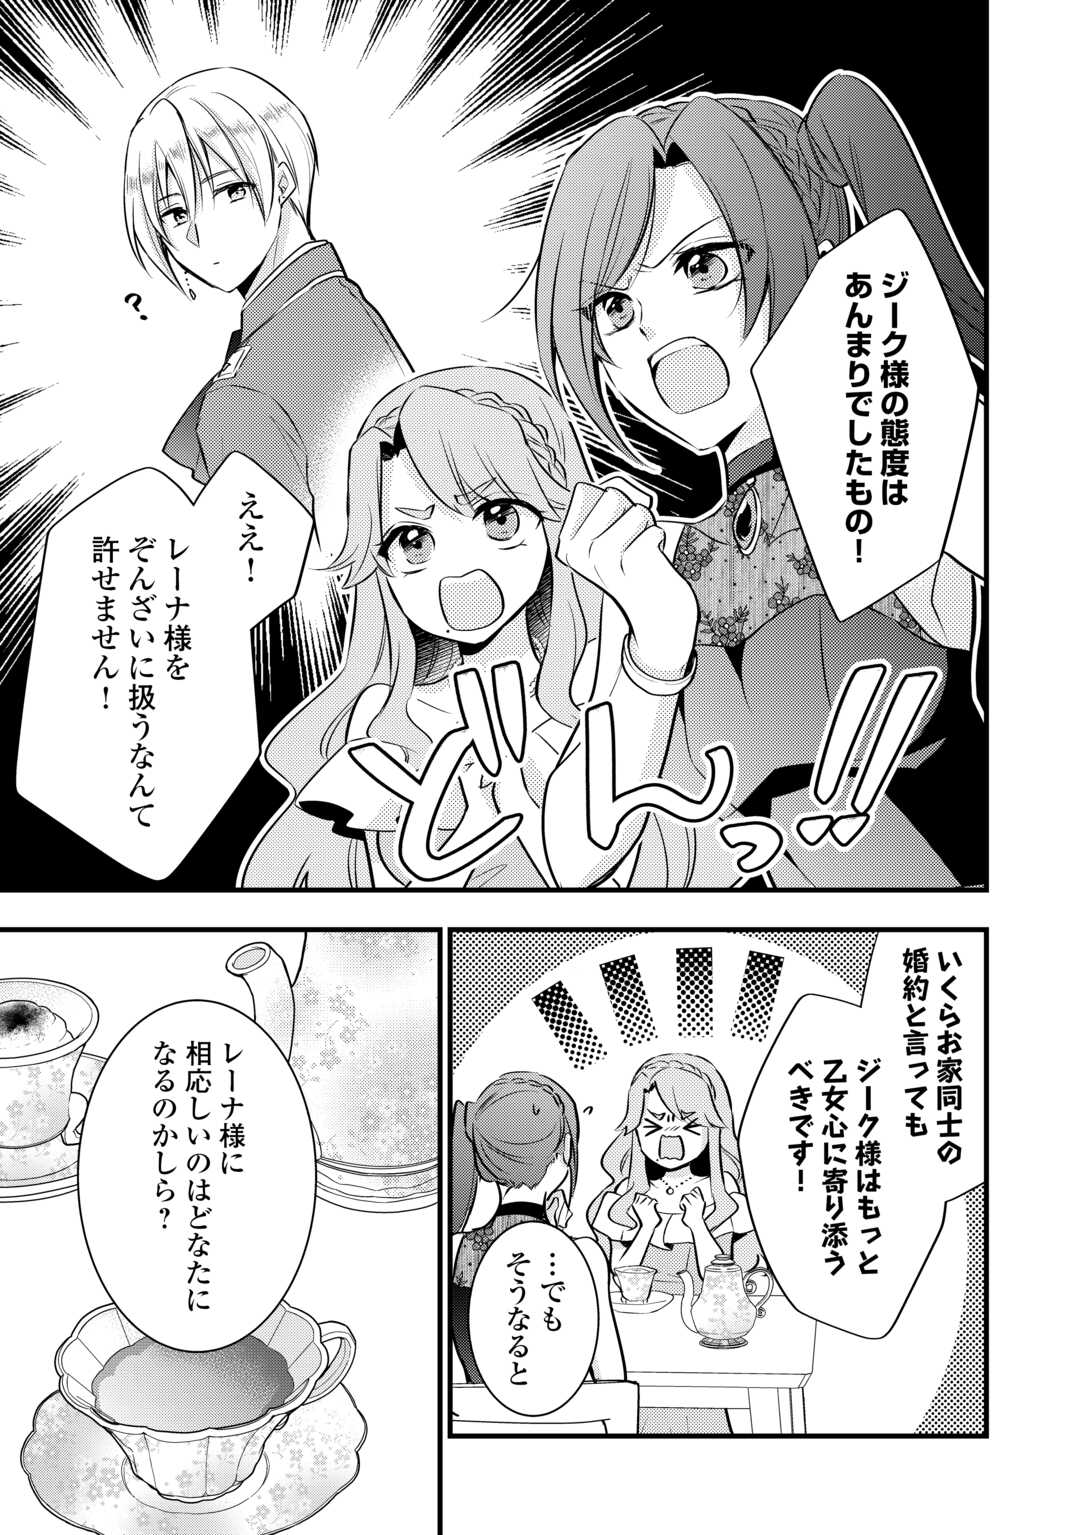 Akuyaku Reijou wa Heroine wo Ijimeteiru Baai de wa Nai - Chapter 19.6 - Page 3